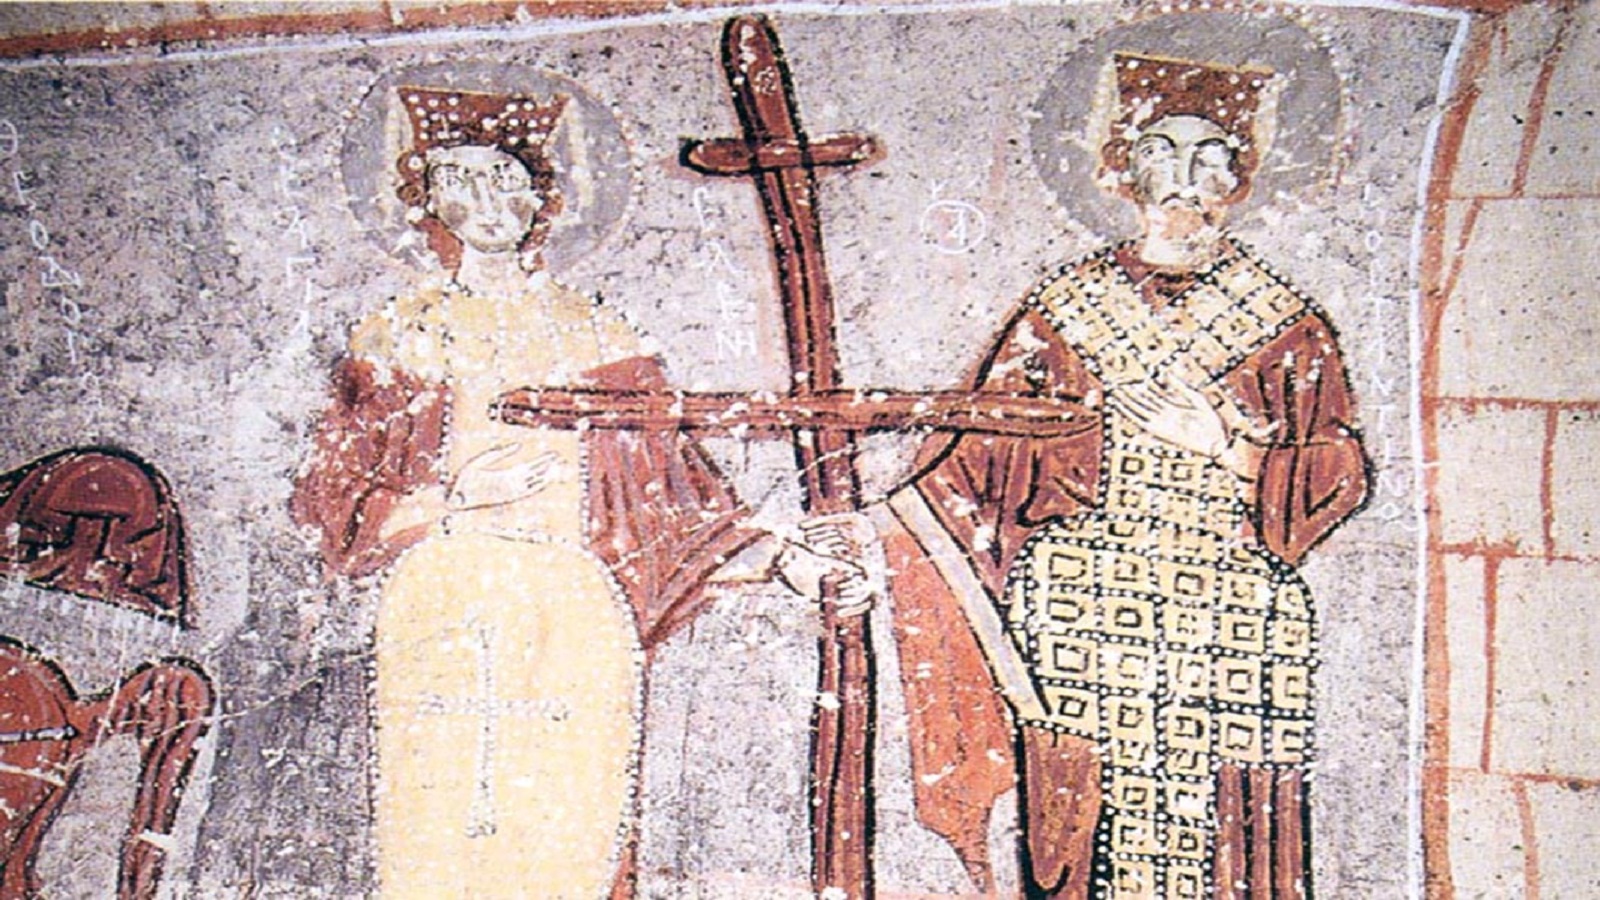 القديسين العظيمين في الملوك والمعادلين للرسل" قسطنطين وهيلانة، جدارية من الكنسية المعروفة بـ"كنيسة الأفعى" تعود إلى منتصف القرن ا11